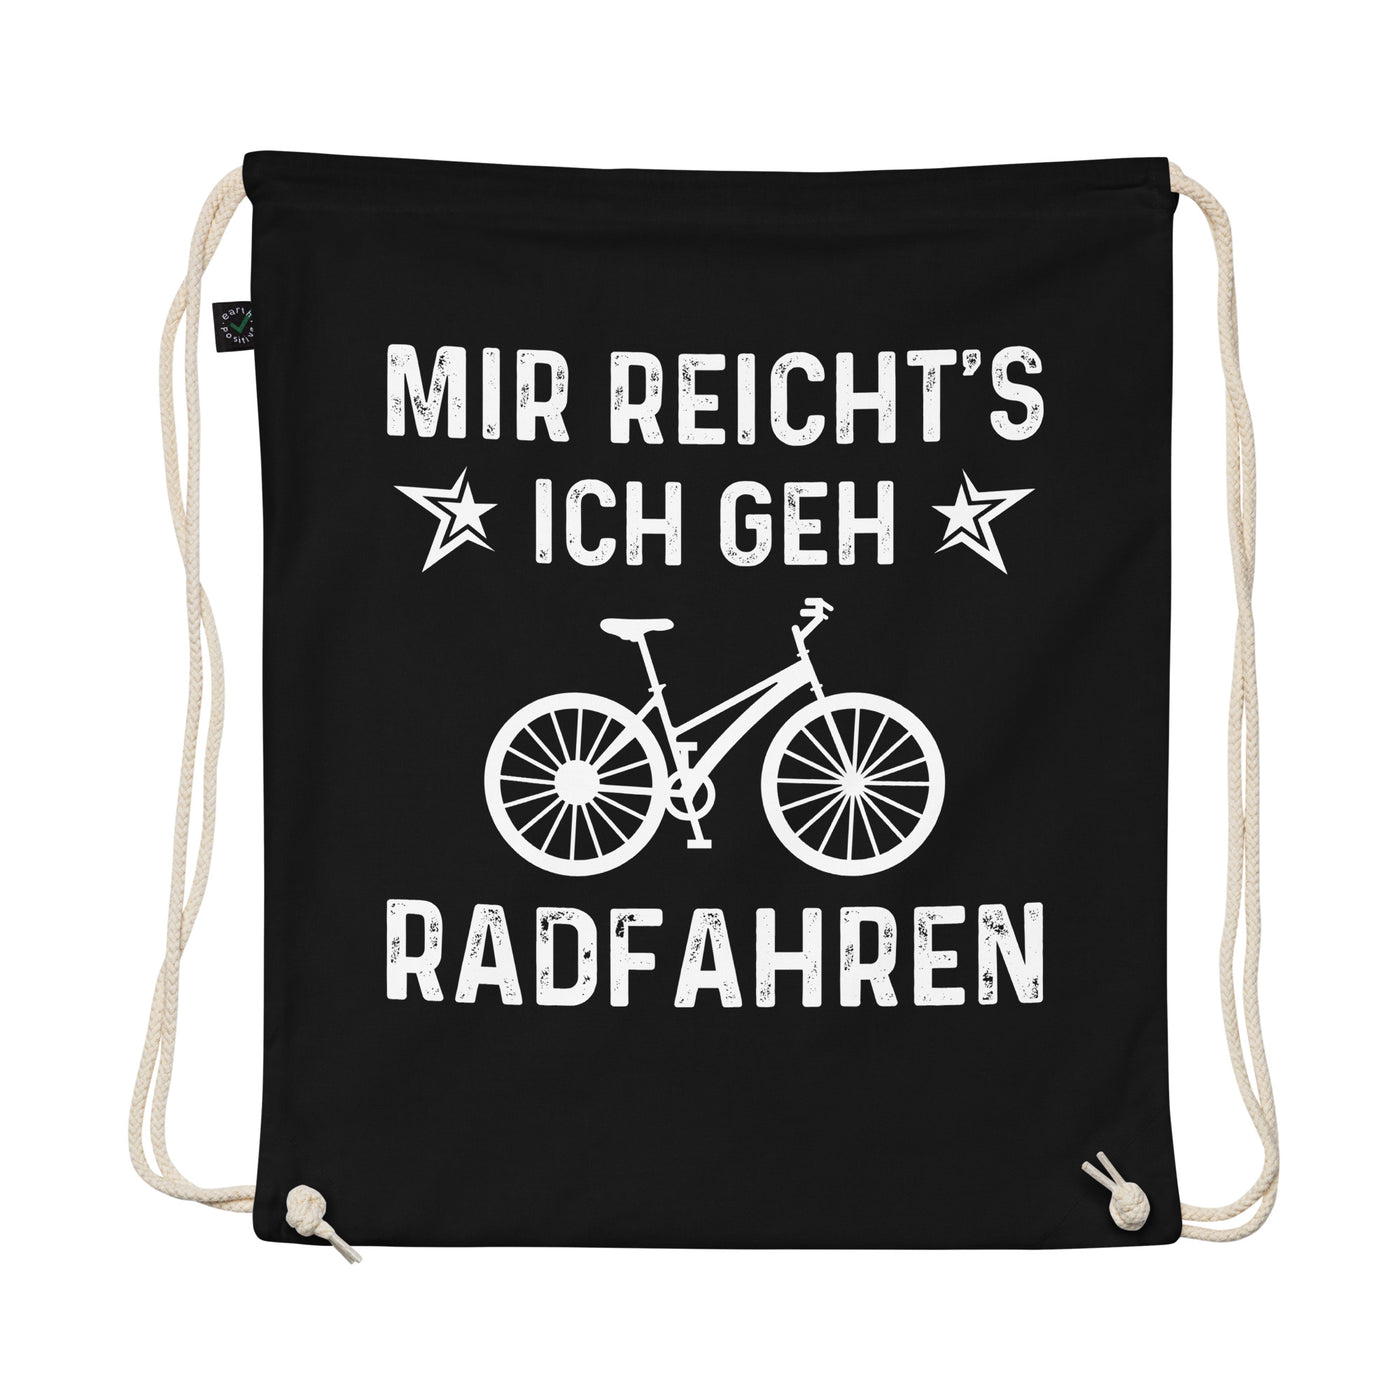 Mir Reicht'S Ich Gen Radfahren - Organic Turnbeutel fahrrad Schwarz